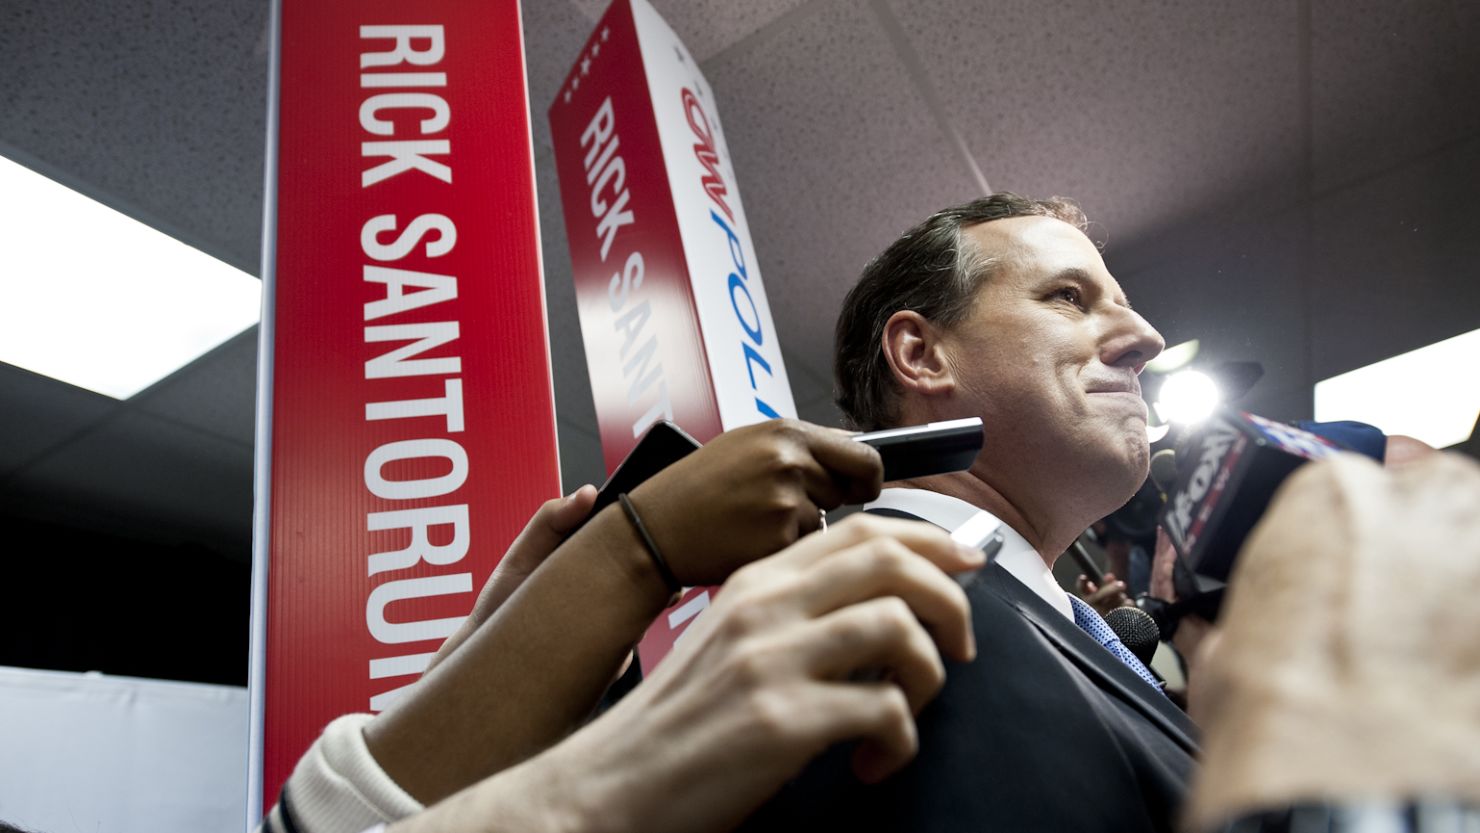 Rick Santorum speaks to reporters after the CNN Republican Presidential Debate in Mesa, Arizona, on February 22.